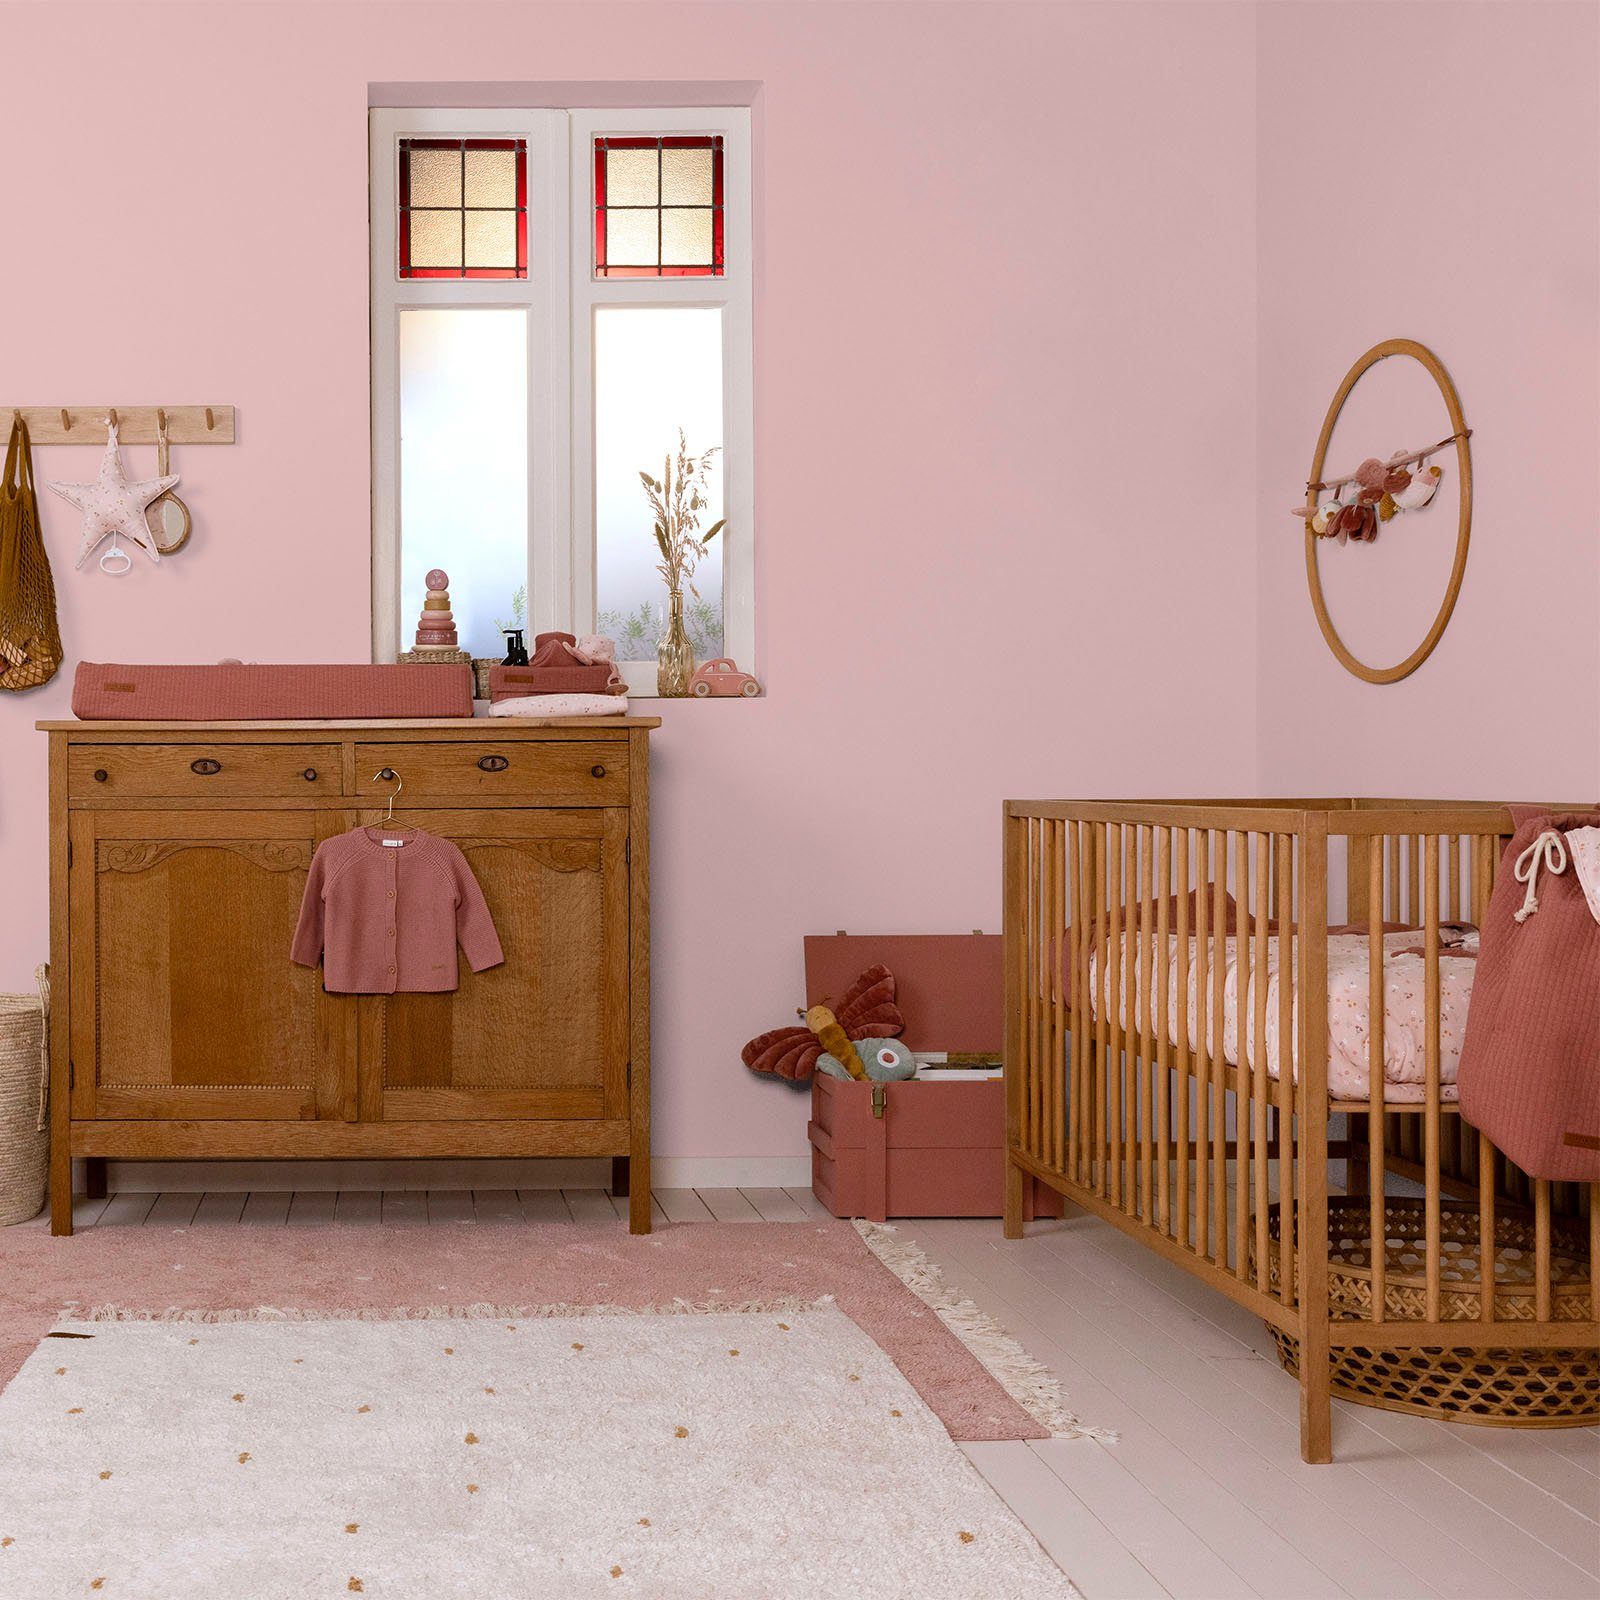 Kinderzimmer extra Faded und Wandfarbe DUTCH waschbeständig, geeignet matt, Rosa hochdeckend für LITTLE Wallpaint,